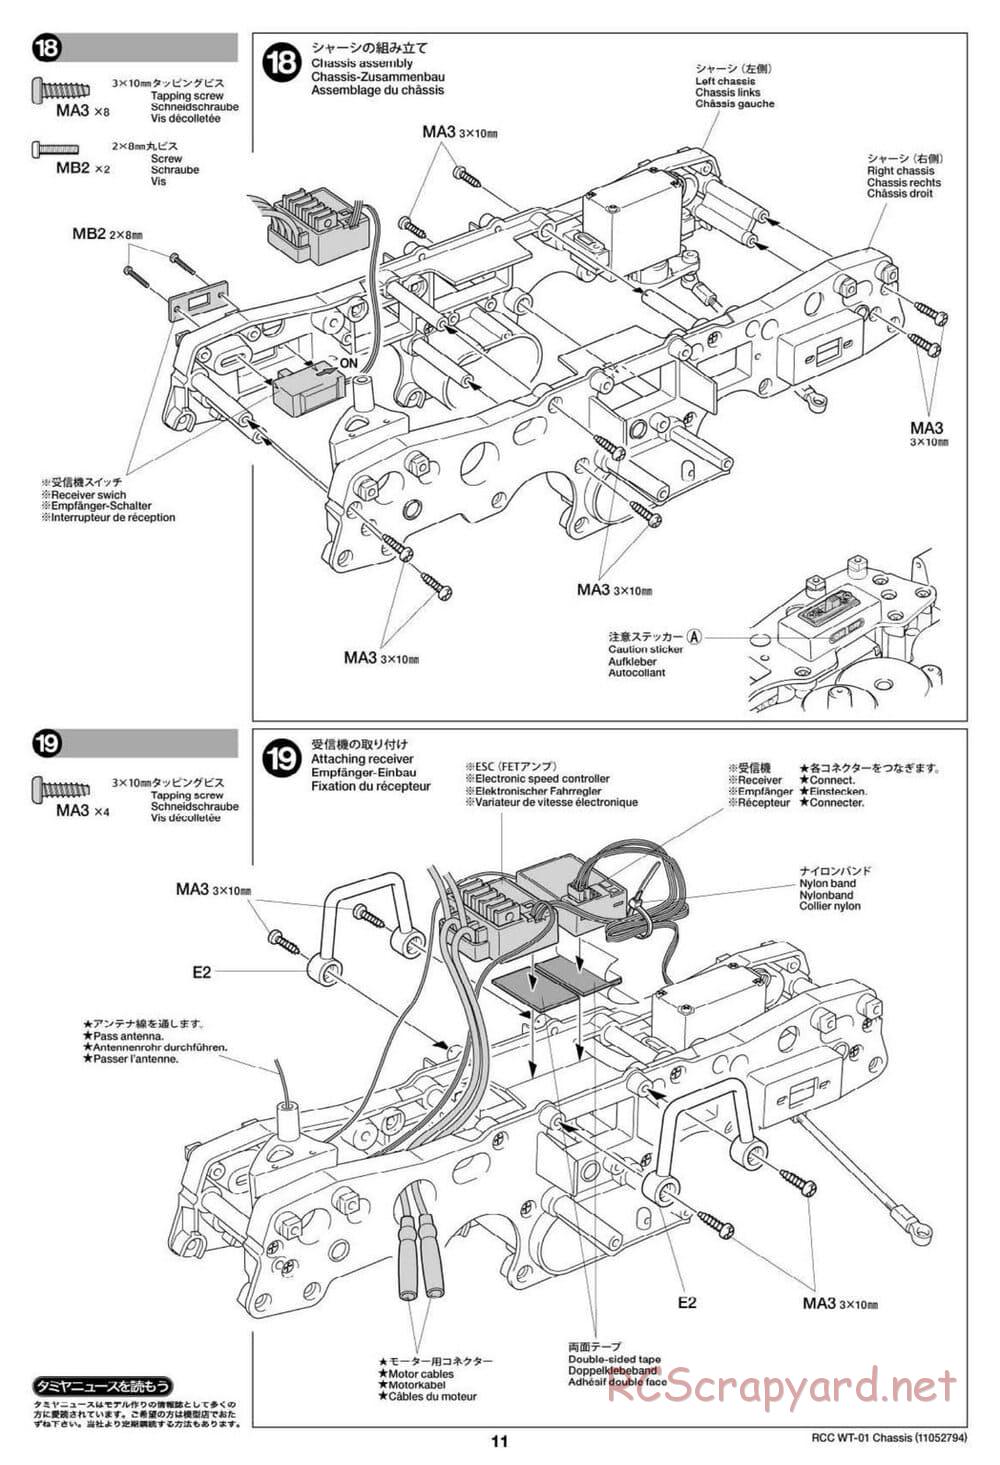 Tamiya - WT-01 Chassis - Manual - Page 11